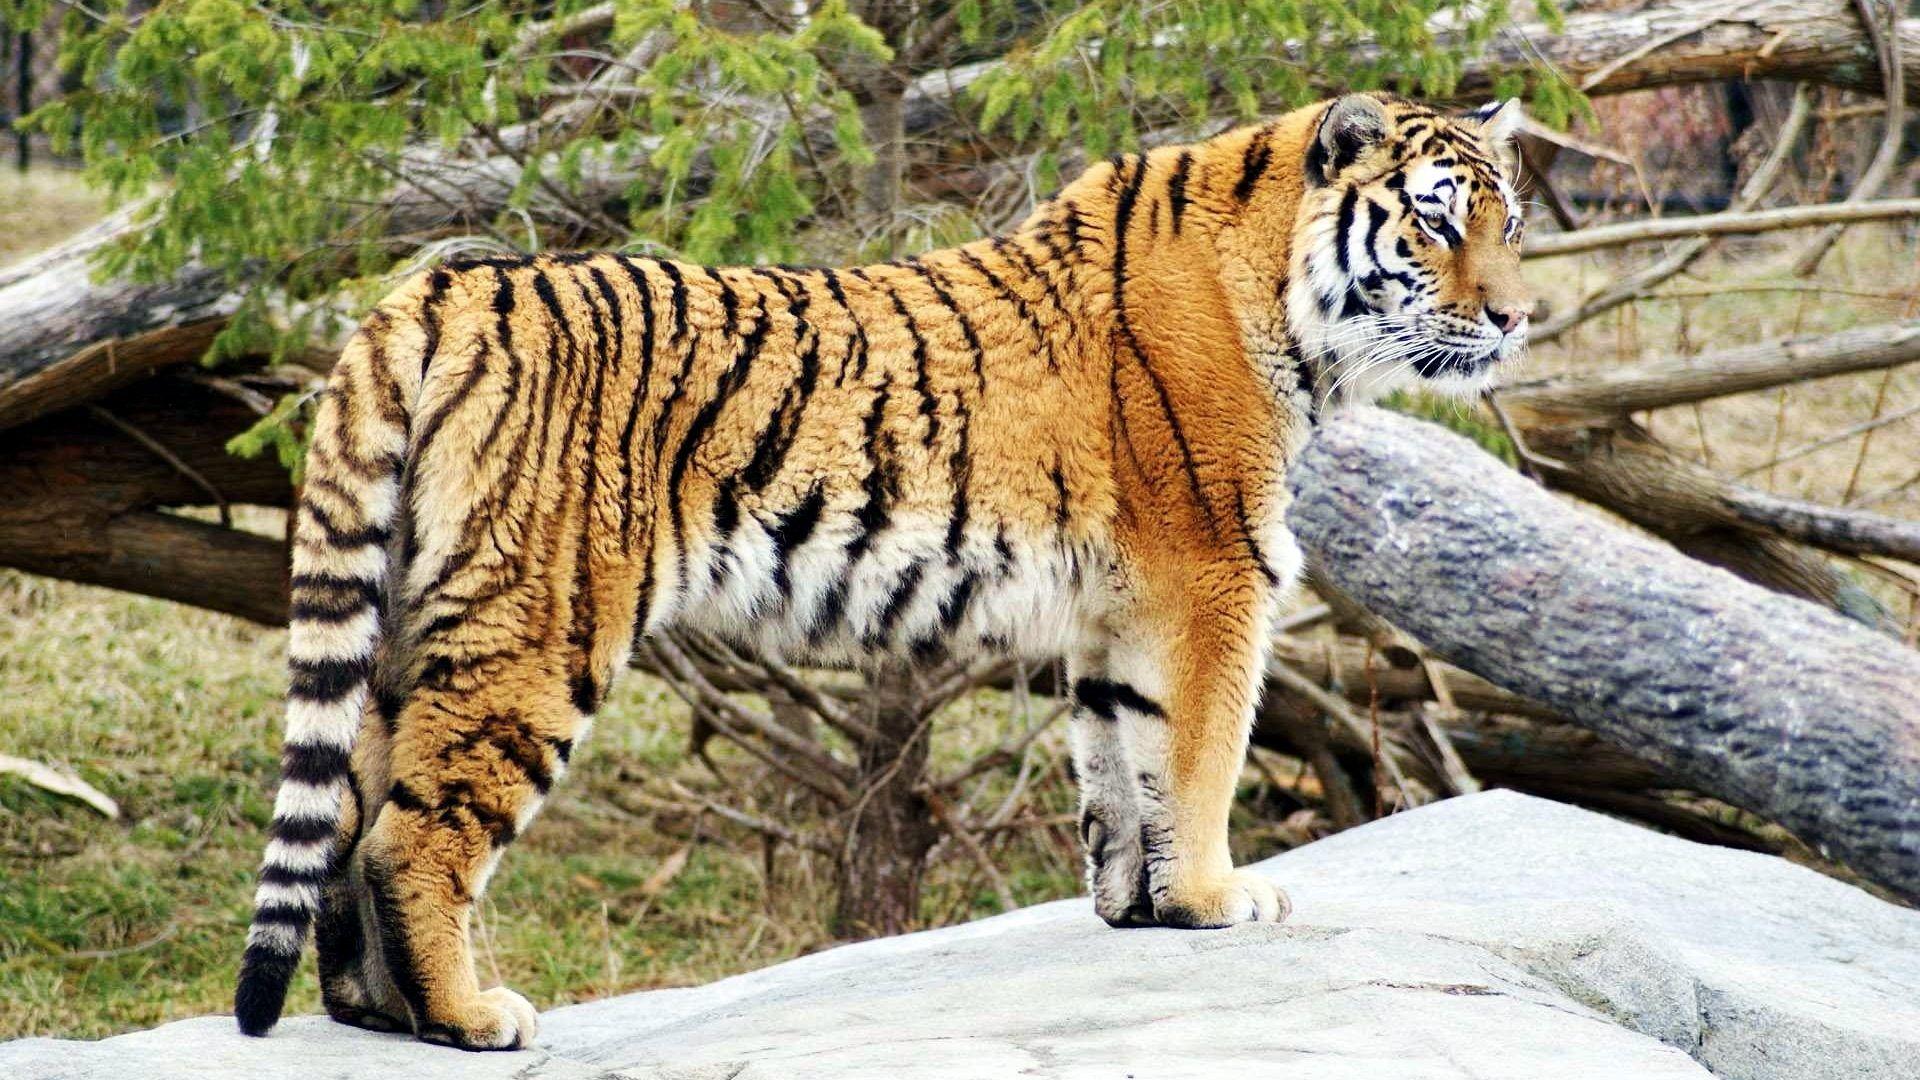 Tiger Tag wallpaper: Tiger Wallpaper Grumpy Cat. Cats Big